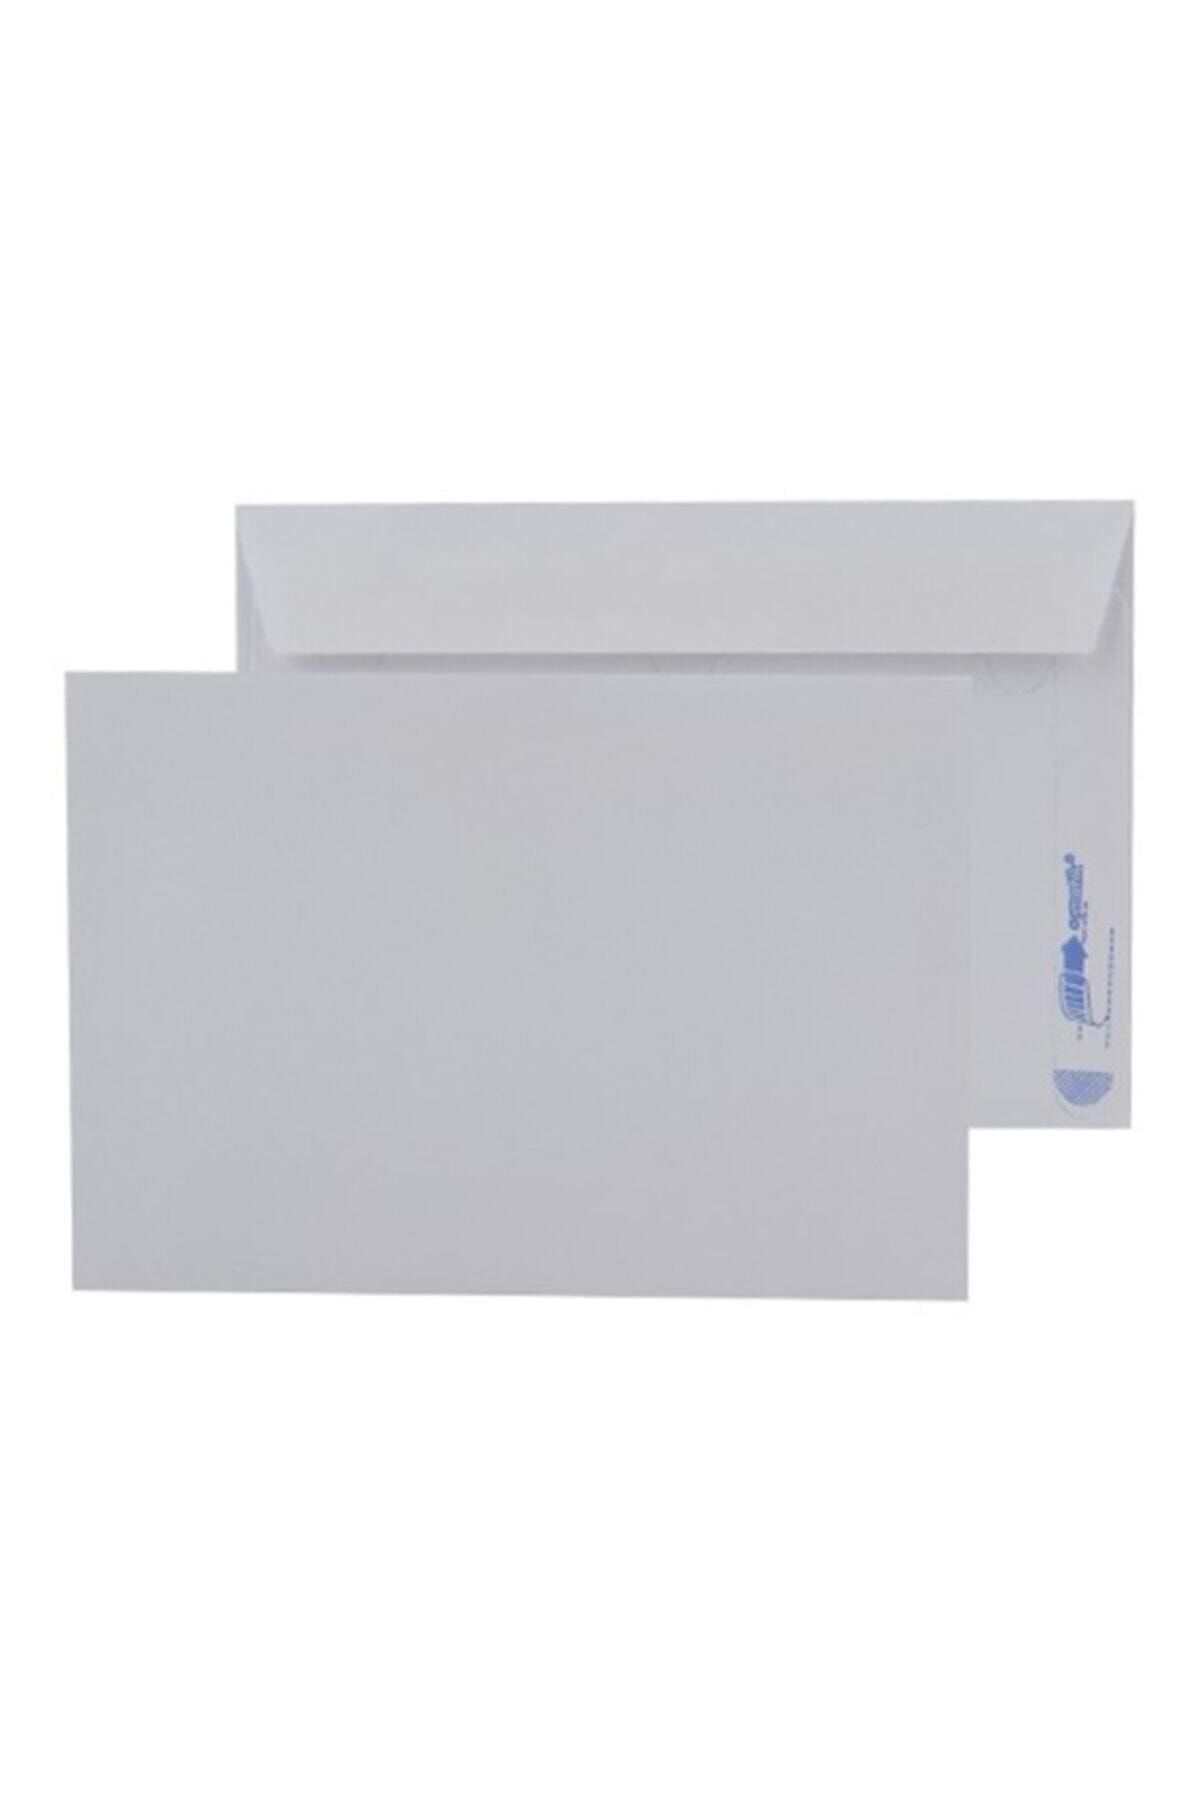 ASİL DOĞAN Mektup Zarfı - Para Zarfı - Takı Zarfı 11,4x16,2cm-100 Adet Beyaz (silikonlu) 90gr Kağıt